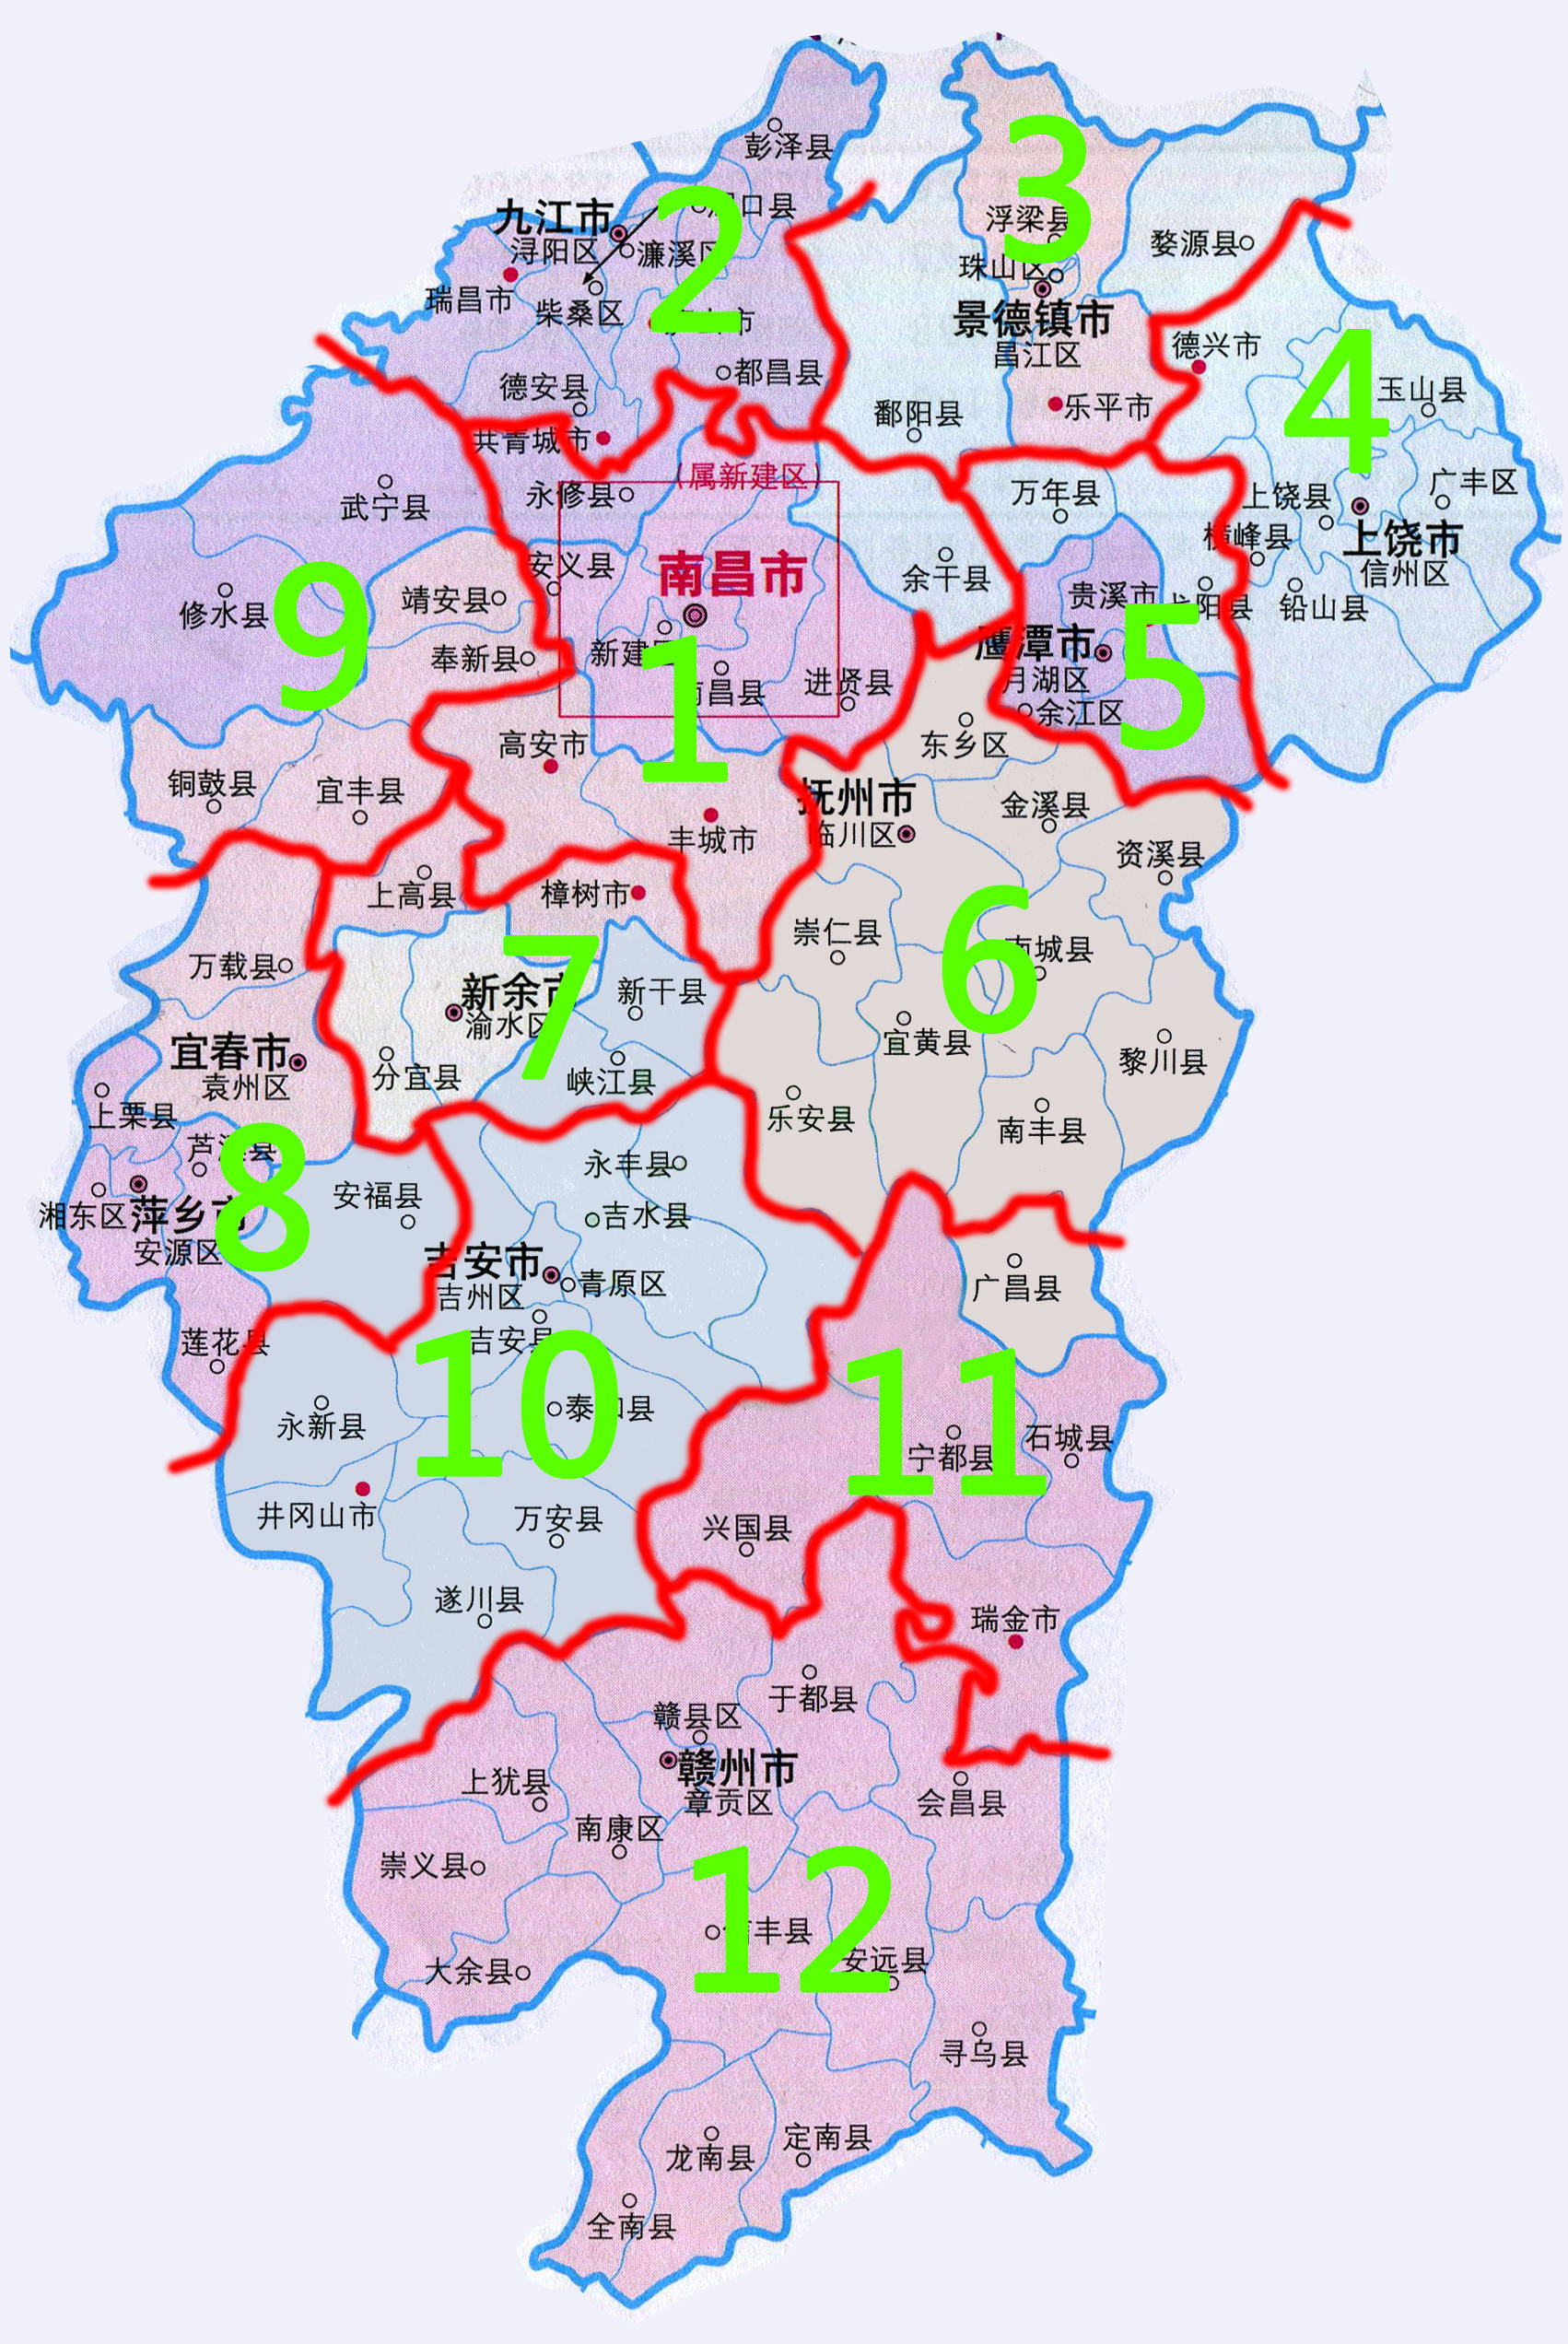 江西区域行政规划调整的建议:12个地级市